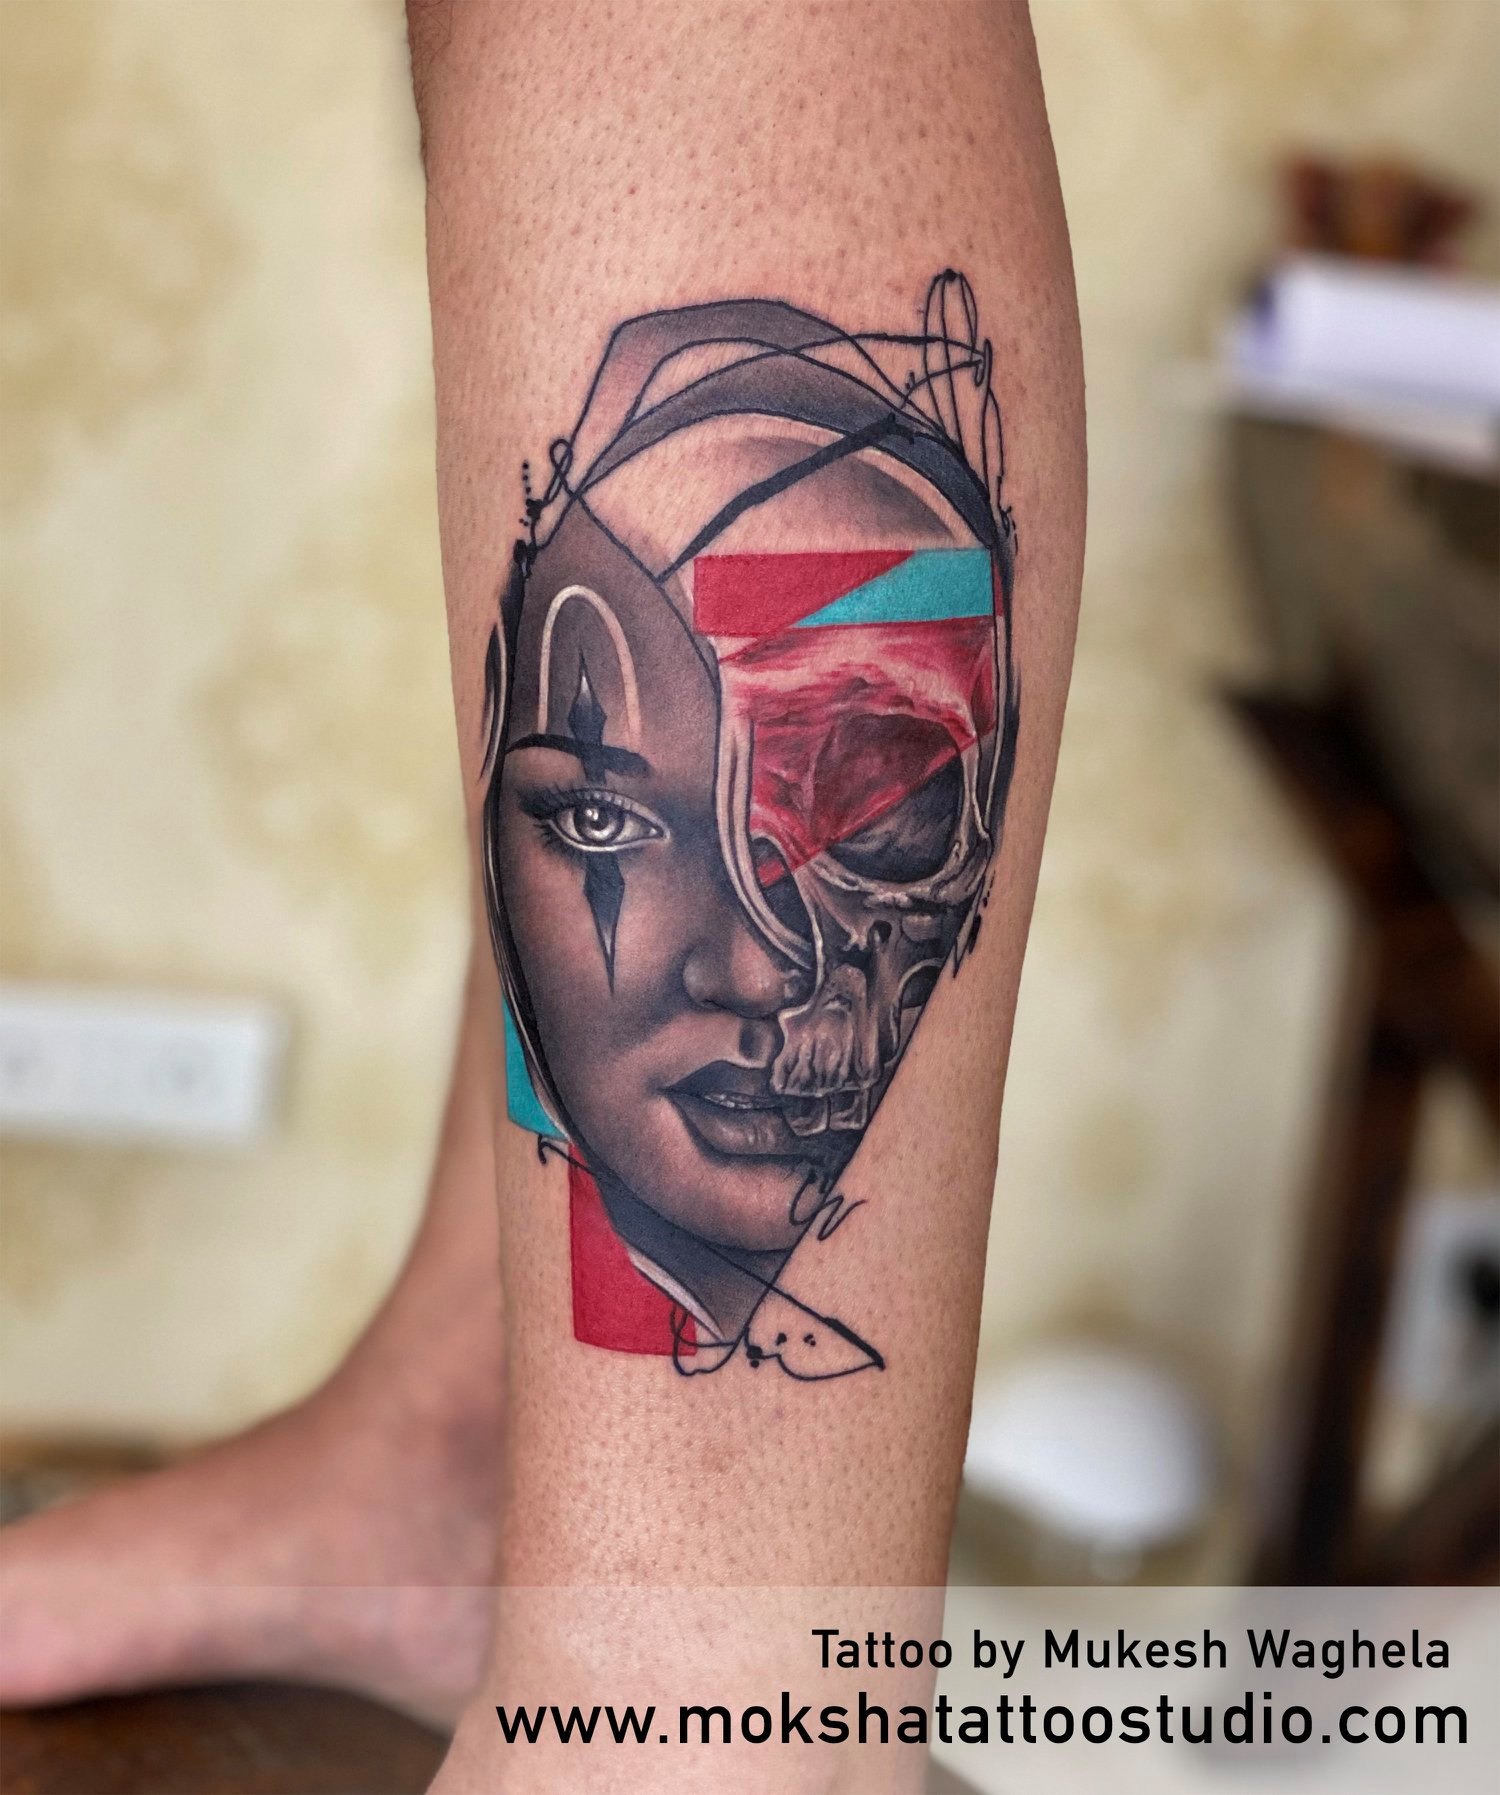 Moksha Tattoo Studio | Tattoo Cultr